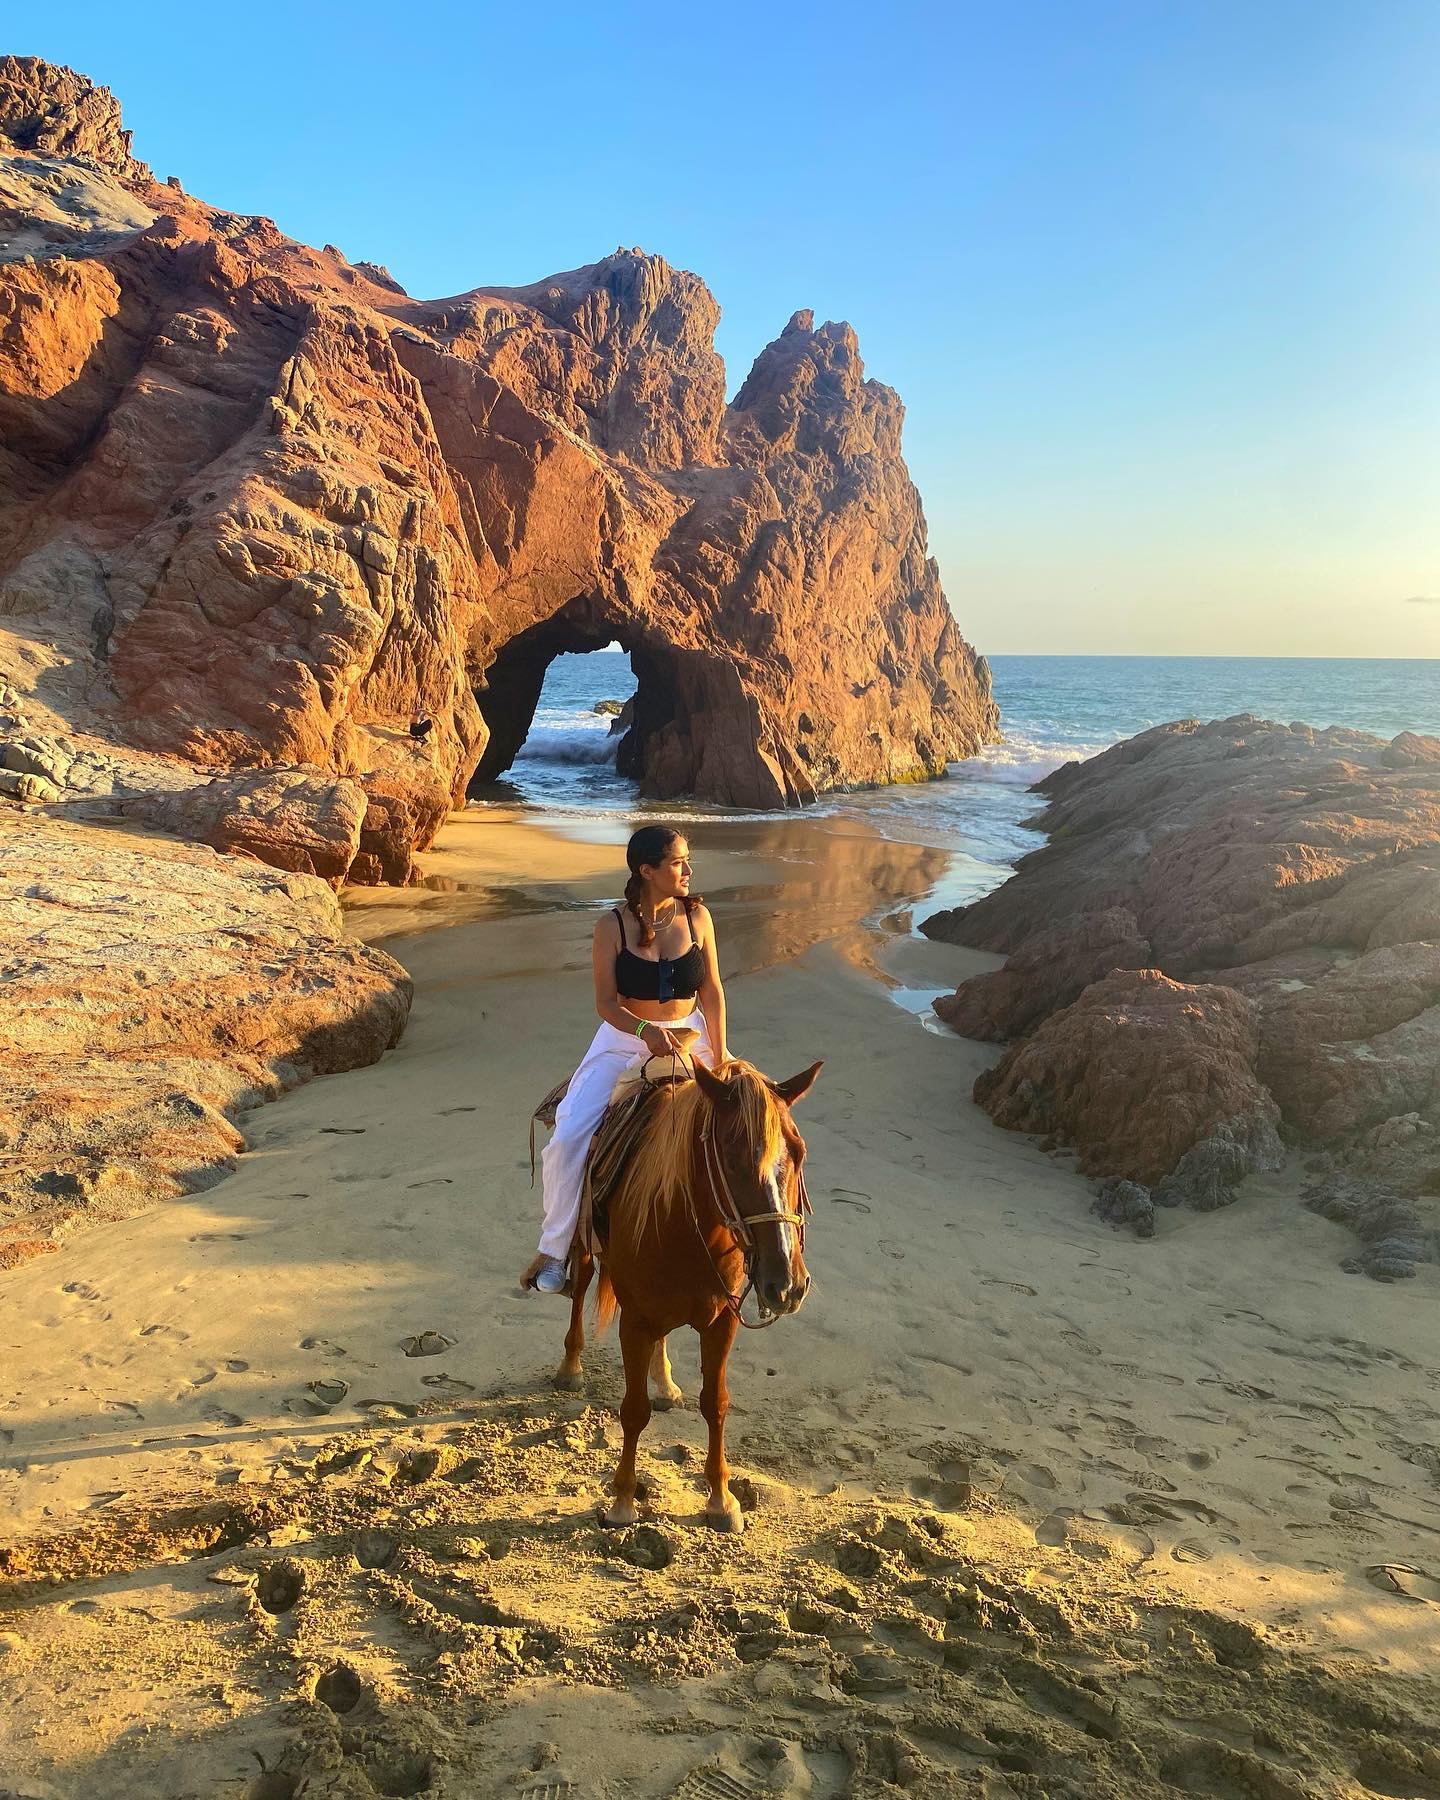 Salma Hayek rides horseback